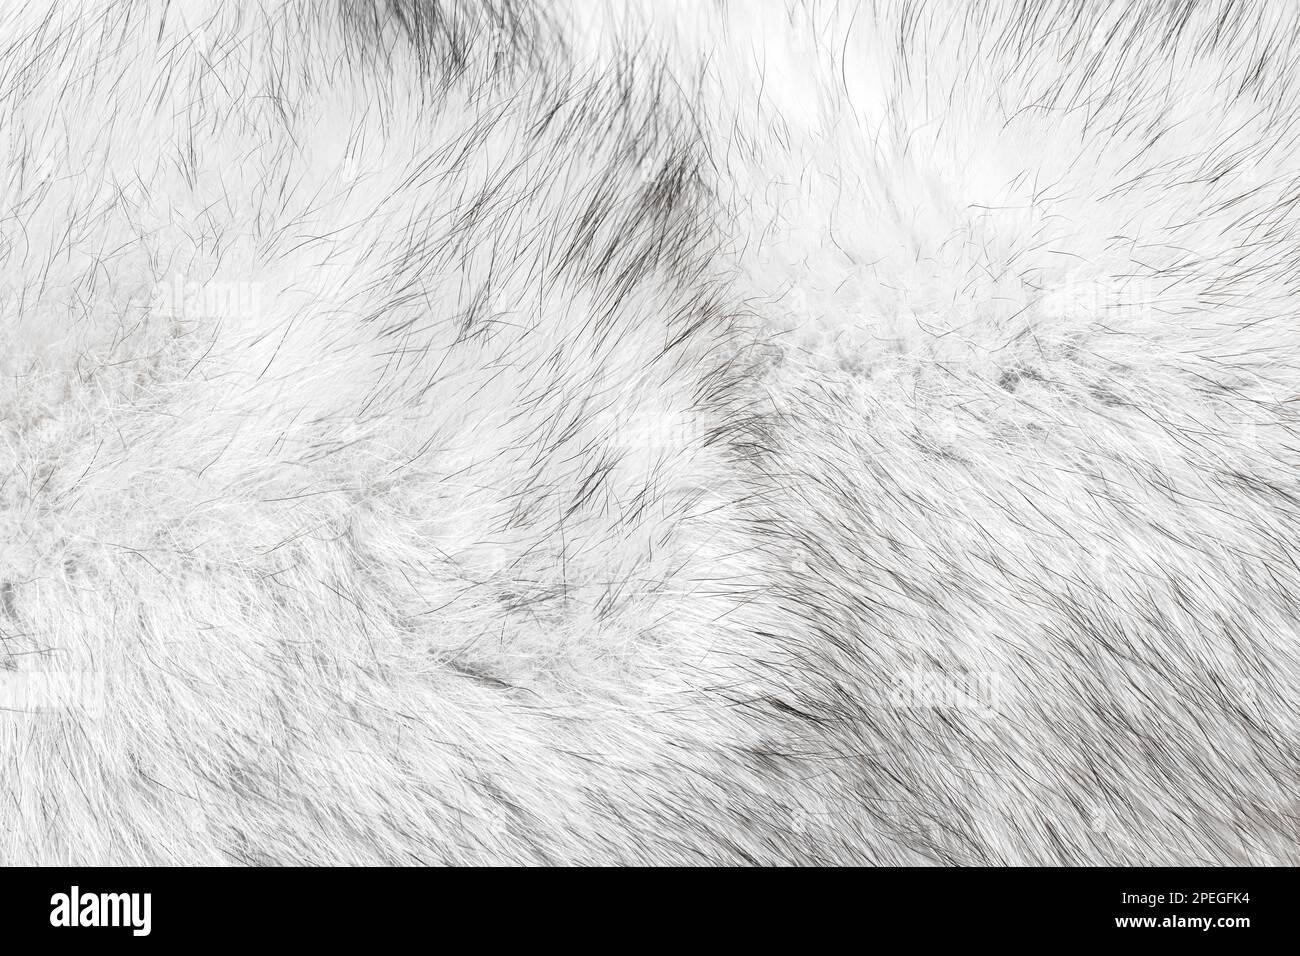 Pelliccia di volpe naturale argento polare bianco nero struttura dei capelli adatta come sfondo Foto Stock